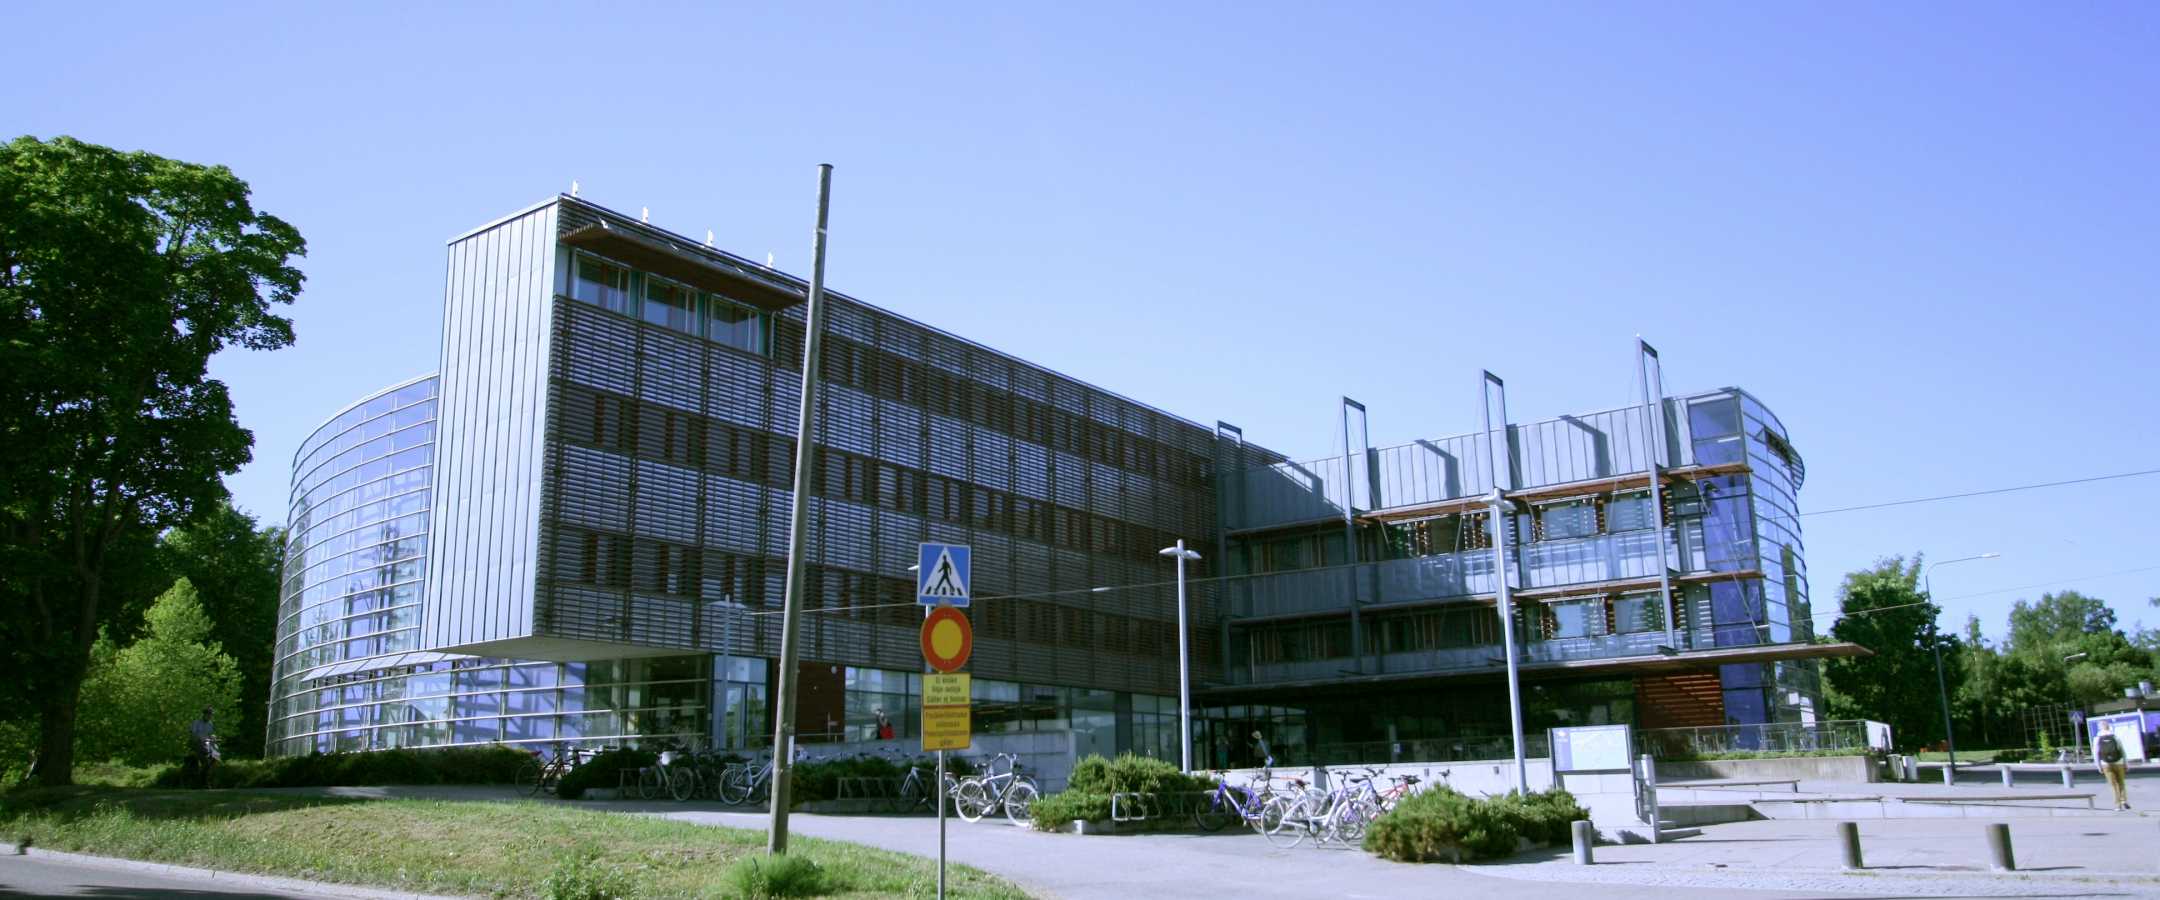 Info Centre Korona facade